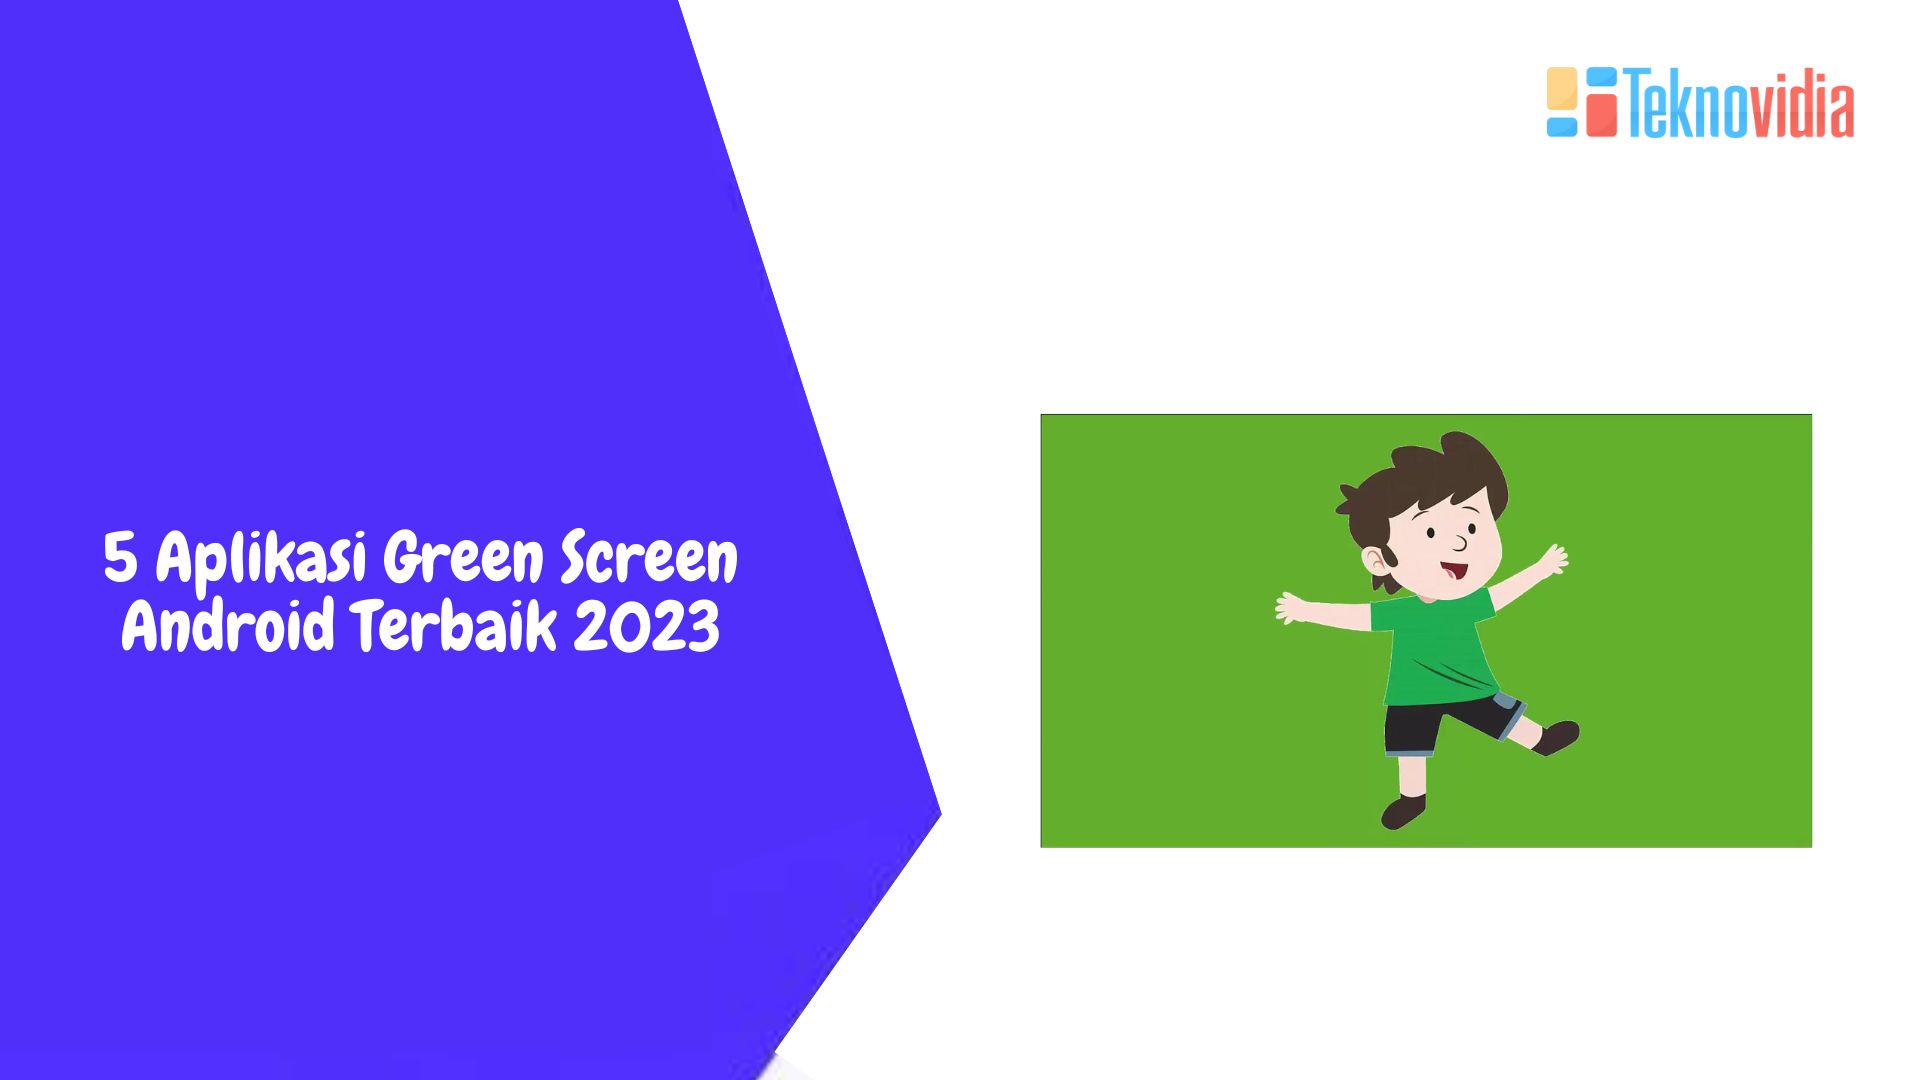 5 Aplikasi Green Screen Android Terbaik 2023